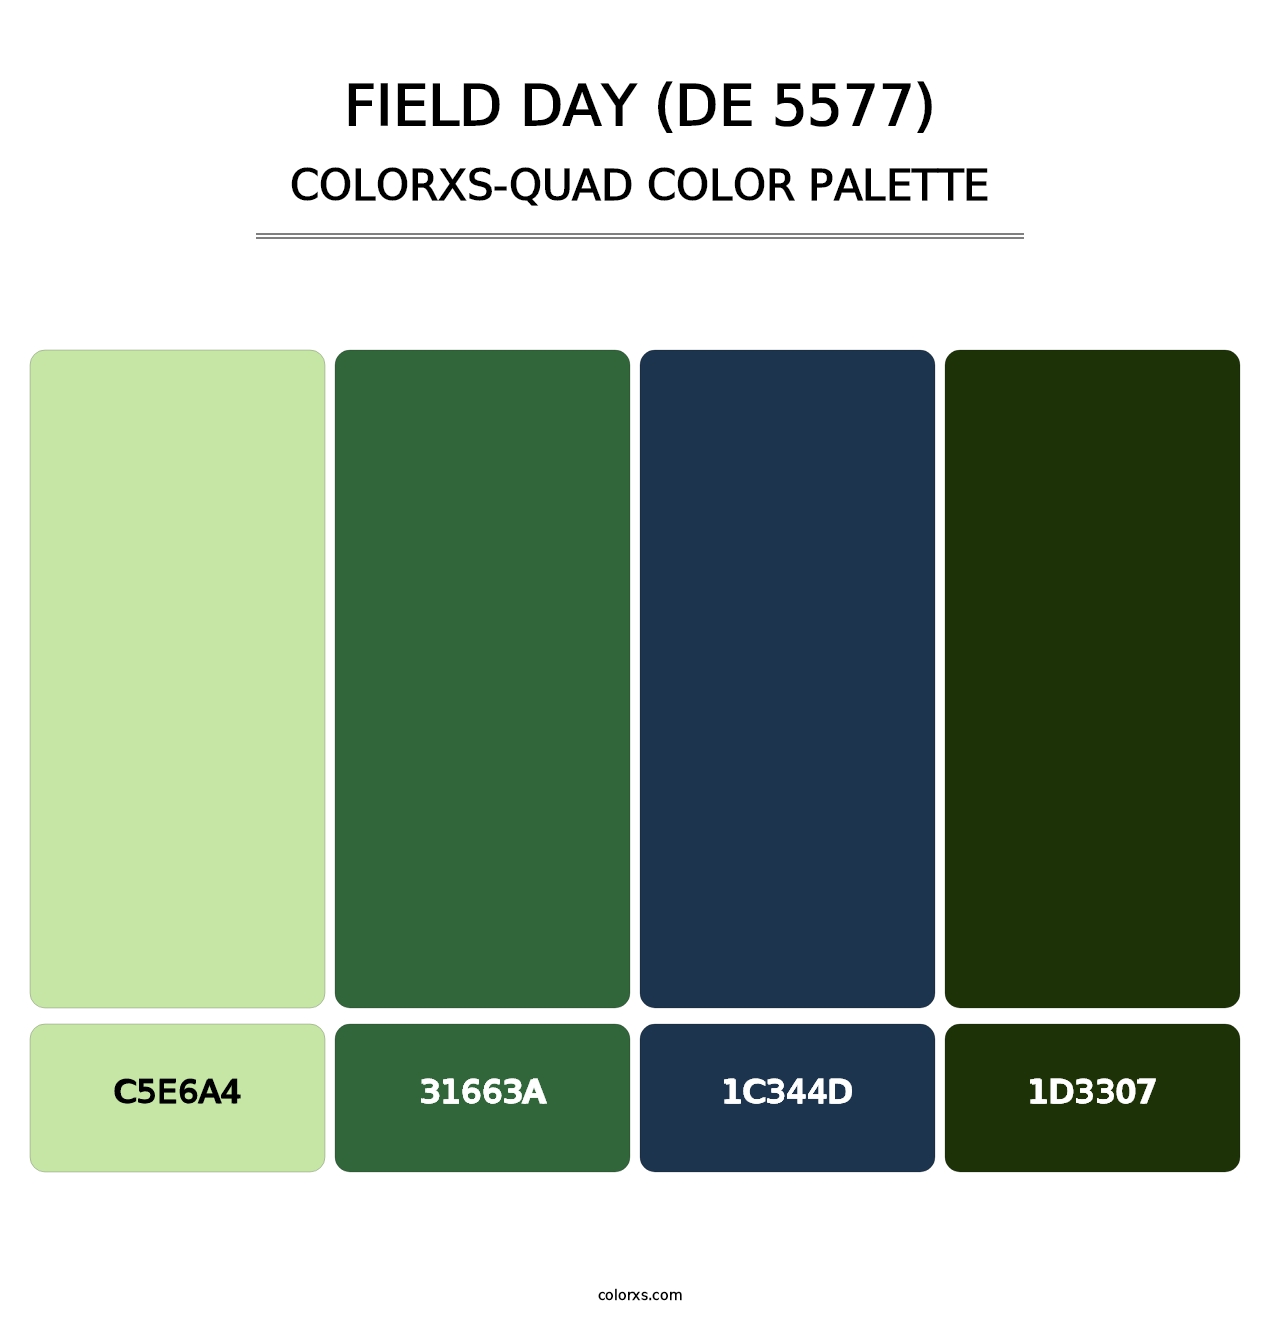 Field Day (DE 5577) - Colorxs Quad Palette